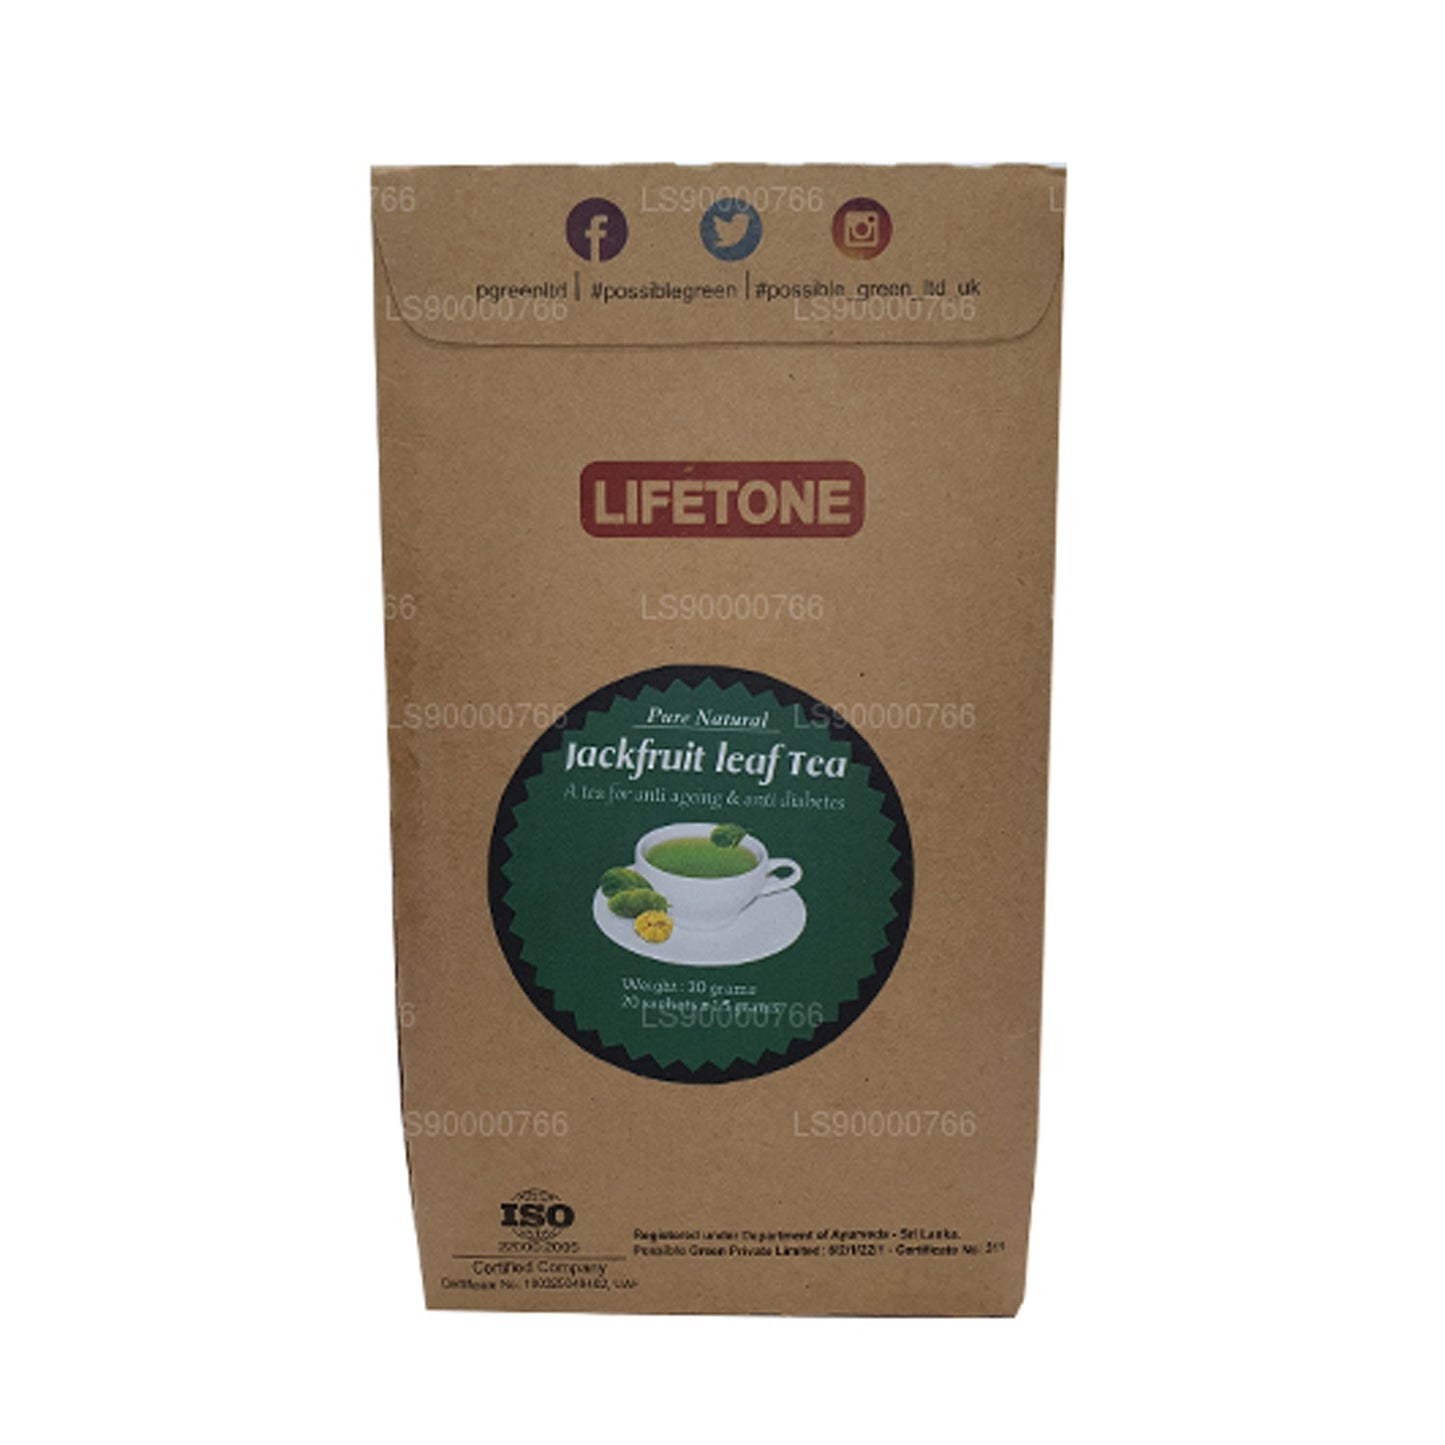 Lifetone Jackfruit Yaprak Çay (40g)